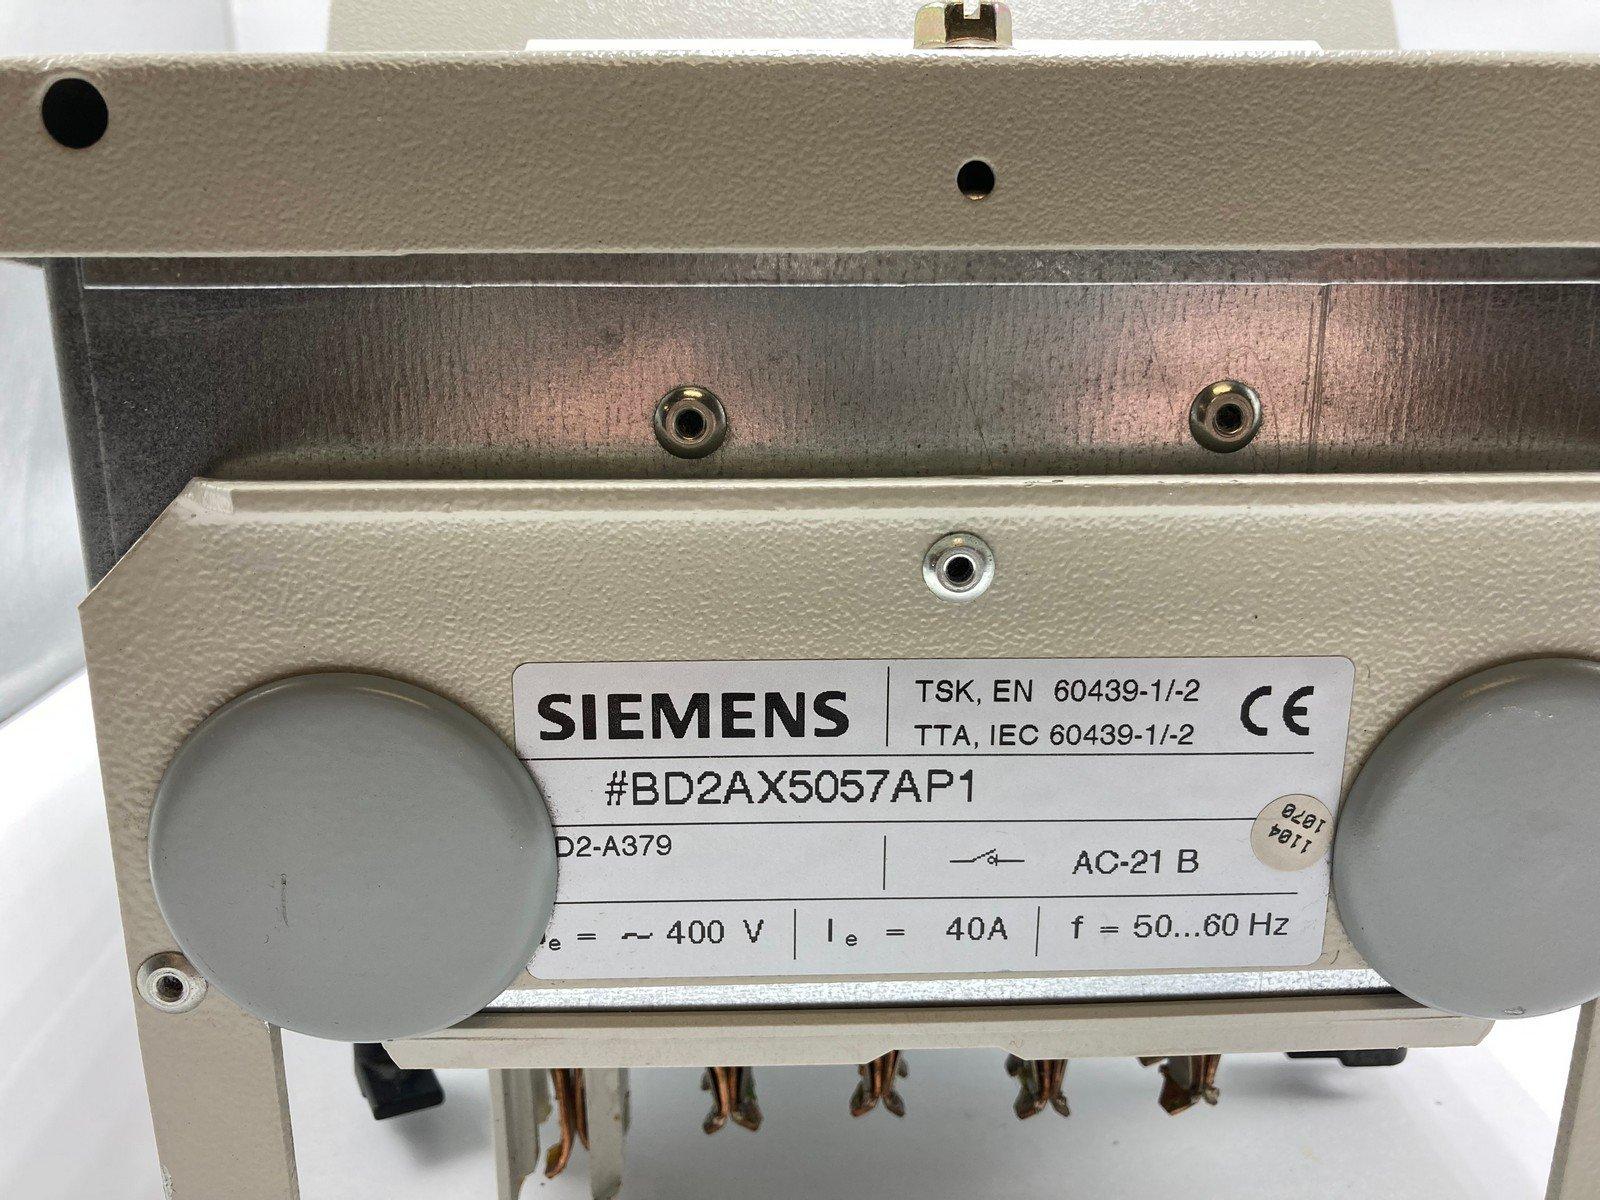  Siemens/Moeller BD2AX5057AP1 Circuit Breaker 600V 40Amp 